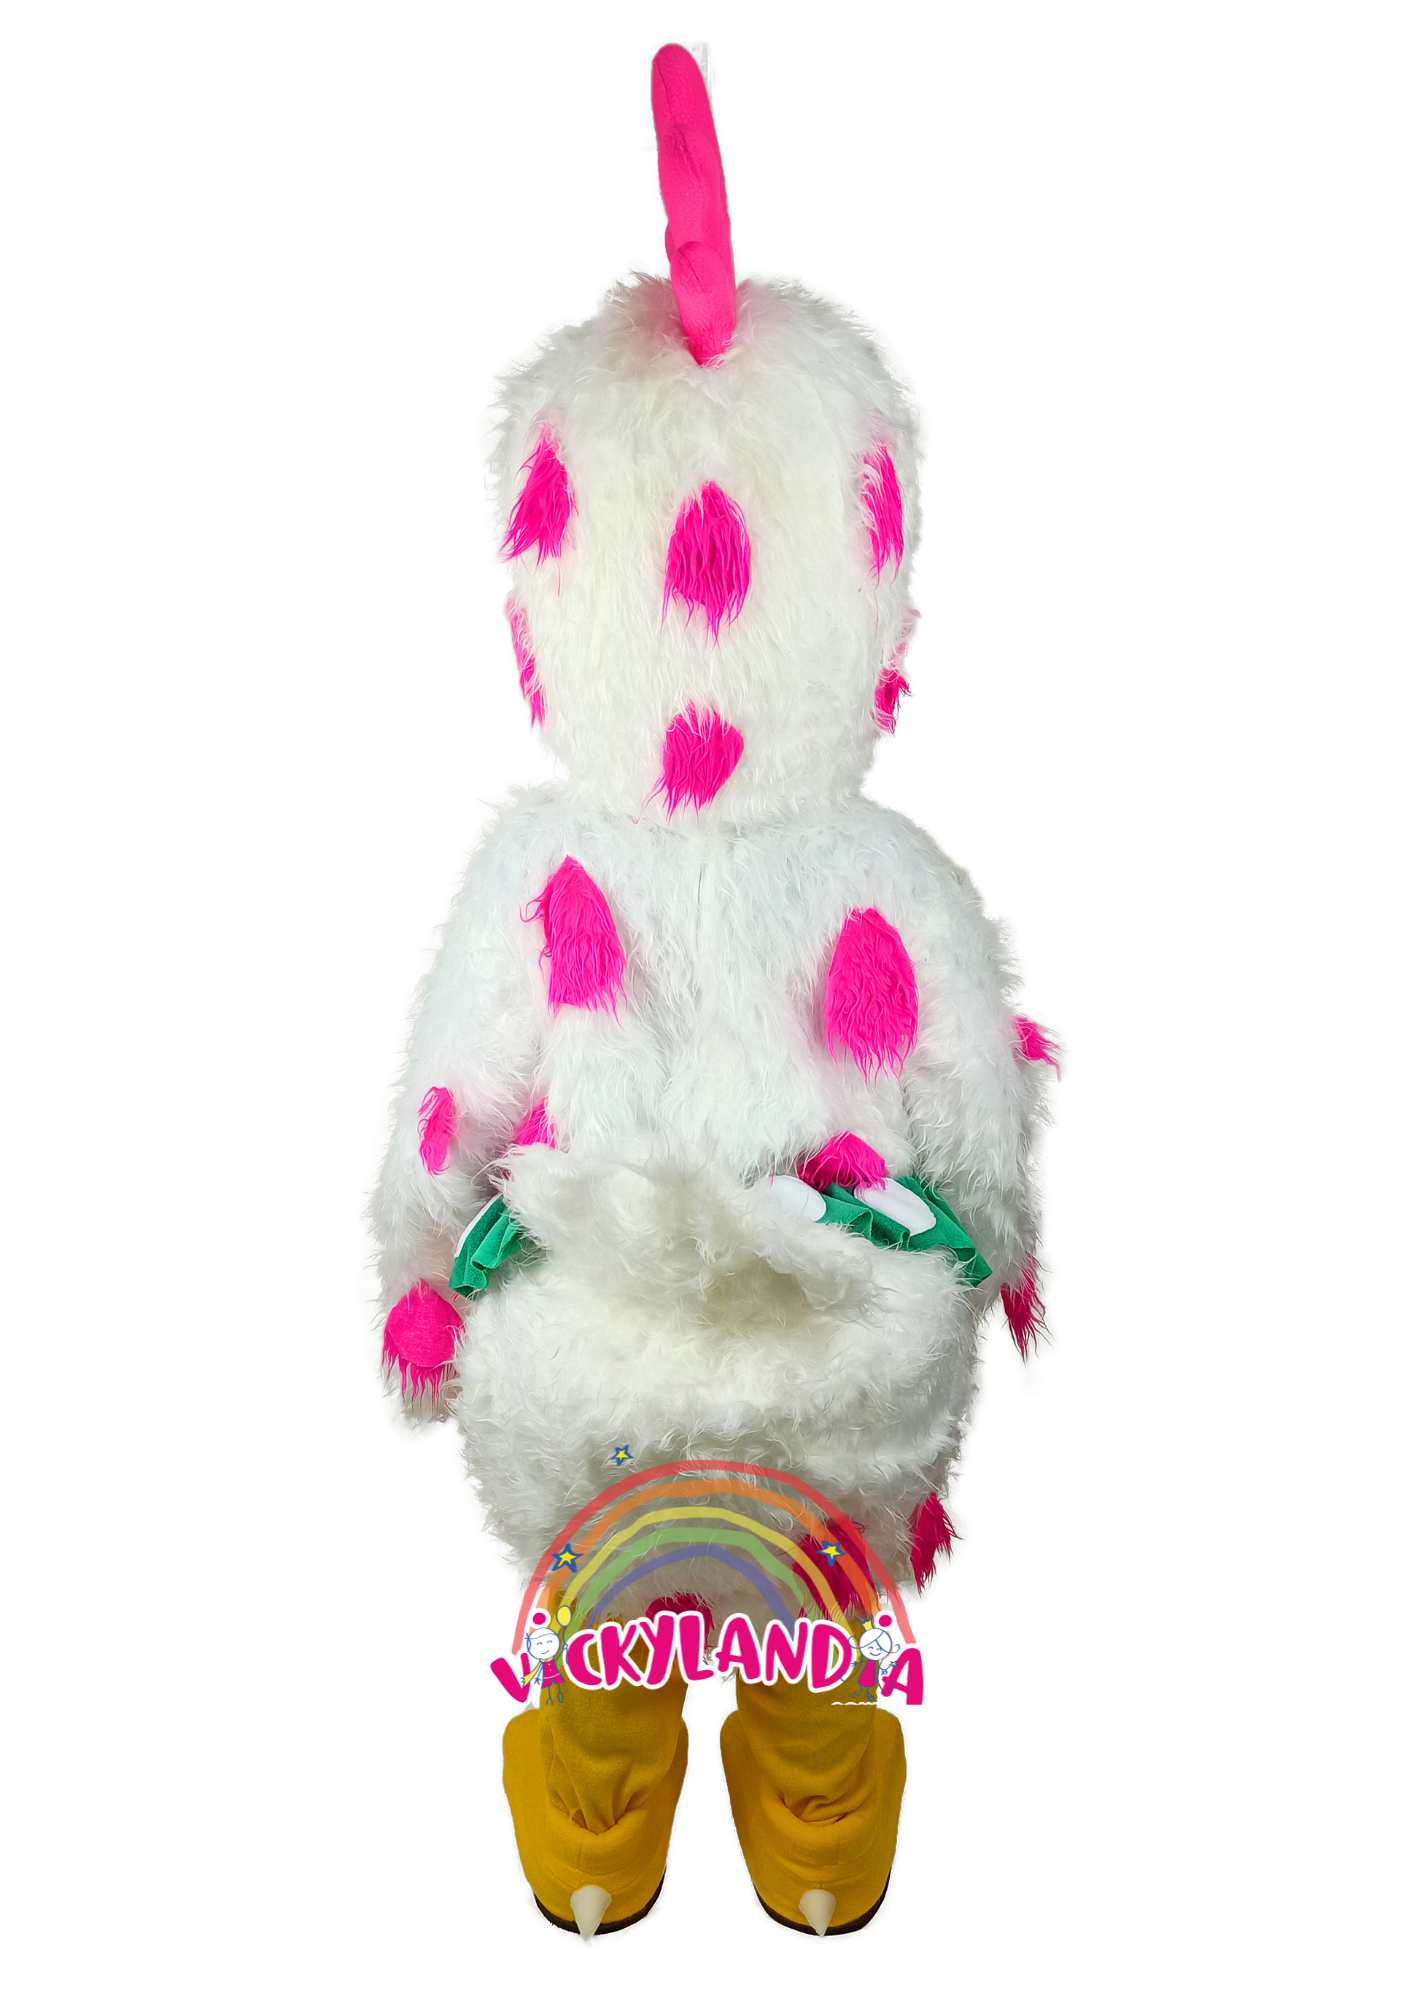 Descubre la magia de nuestro muñeco publicitario de Gallina Pintoresca en Vickylandia. Son disfraces cabezones perfectos para fiestas infantiles, shows, cumpleaños, estrategias publicitarias, carnavales, fiestas patronales, espectáculos, cabalgatas y cualquier tipo de evento